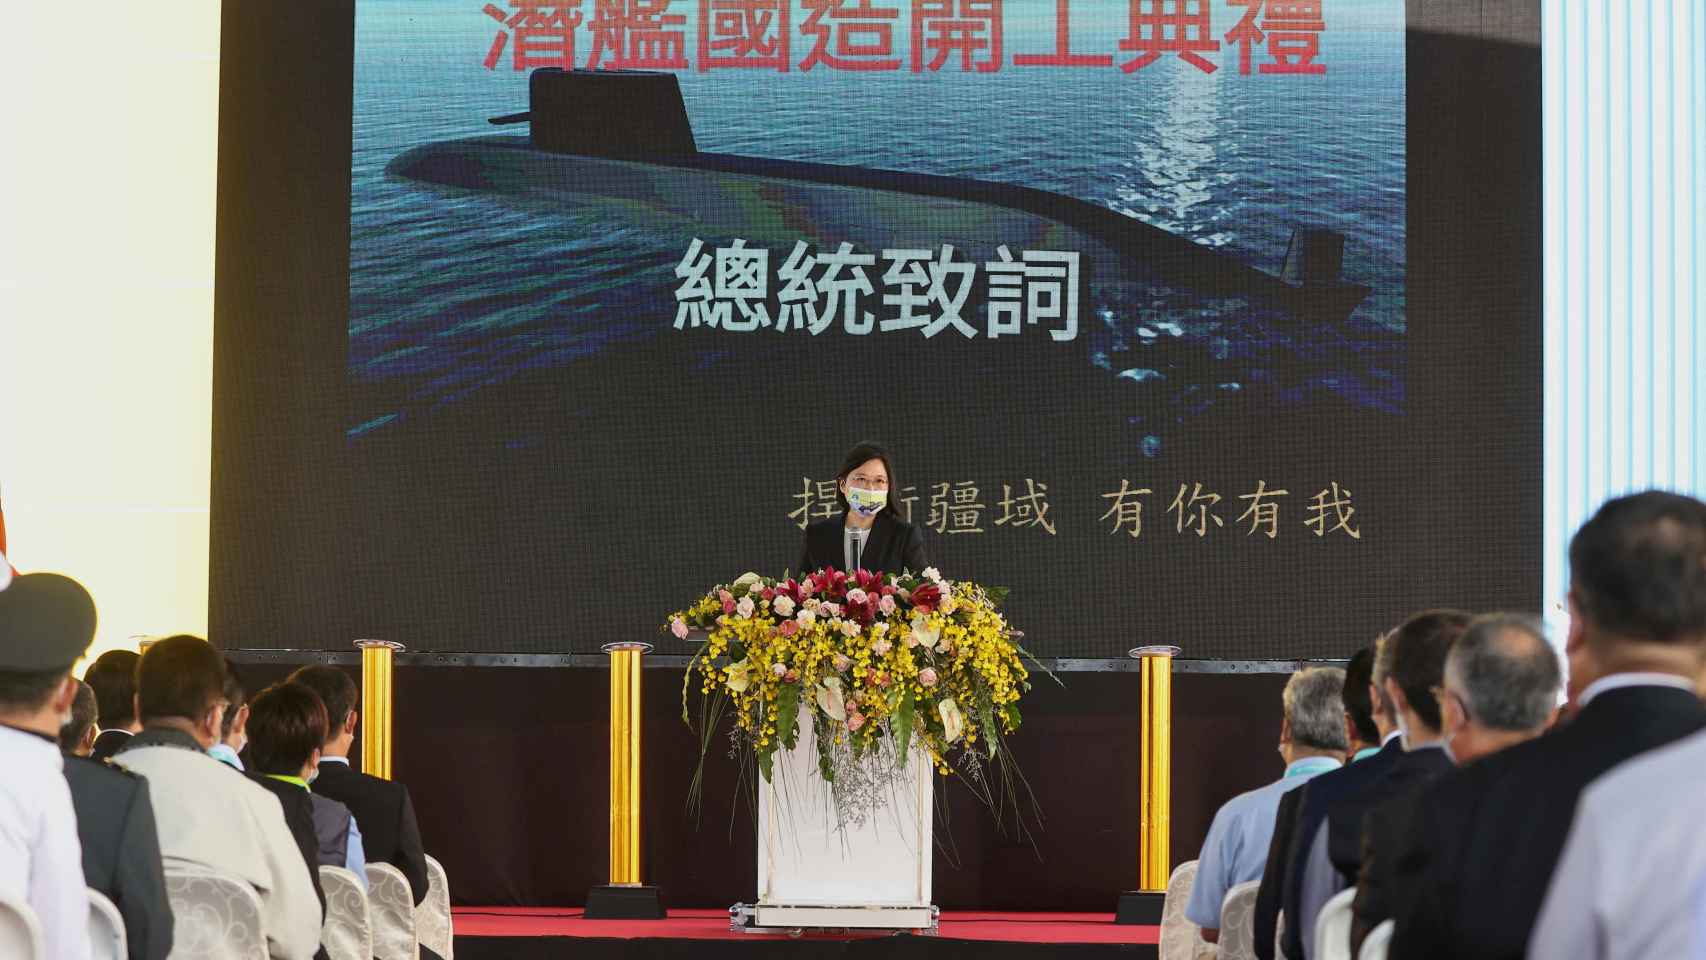 La presidenta de Taiwán, Tsai Ing - wen, asiste a una ceremonia para el inicio de la construcción de una nueva flota de submarinos en Kaohsiung, Taiwán, el 24 de noviembre de 2020.